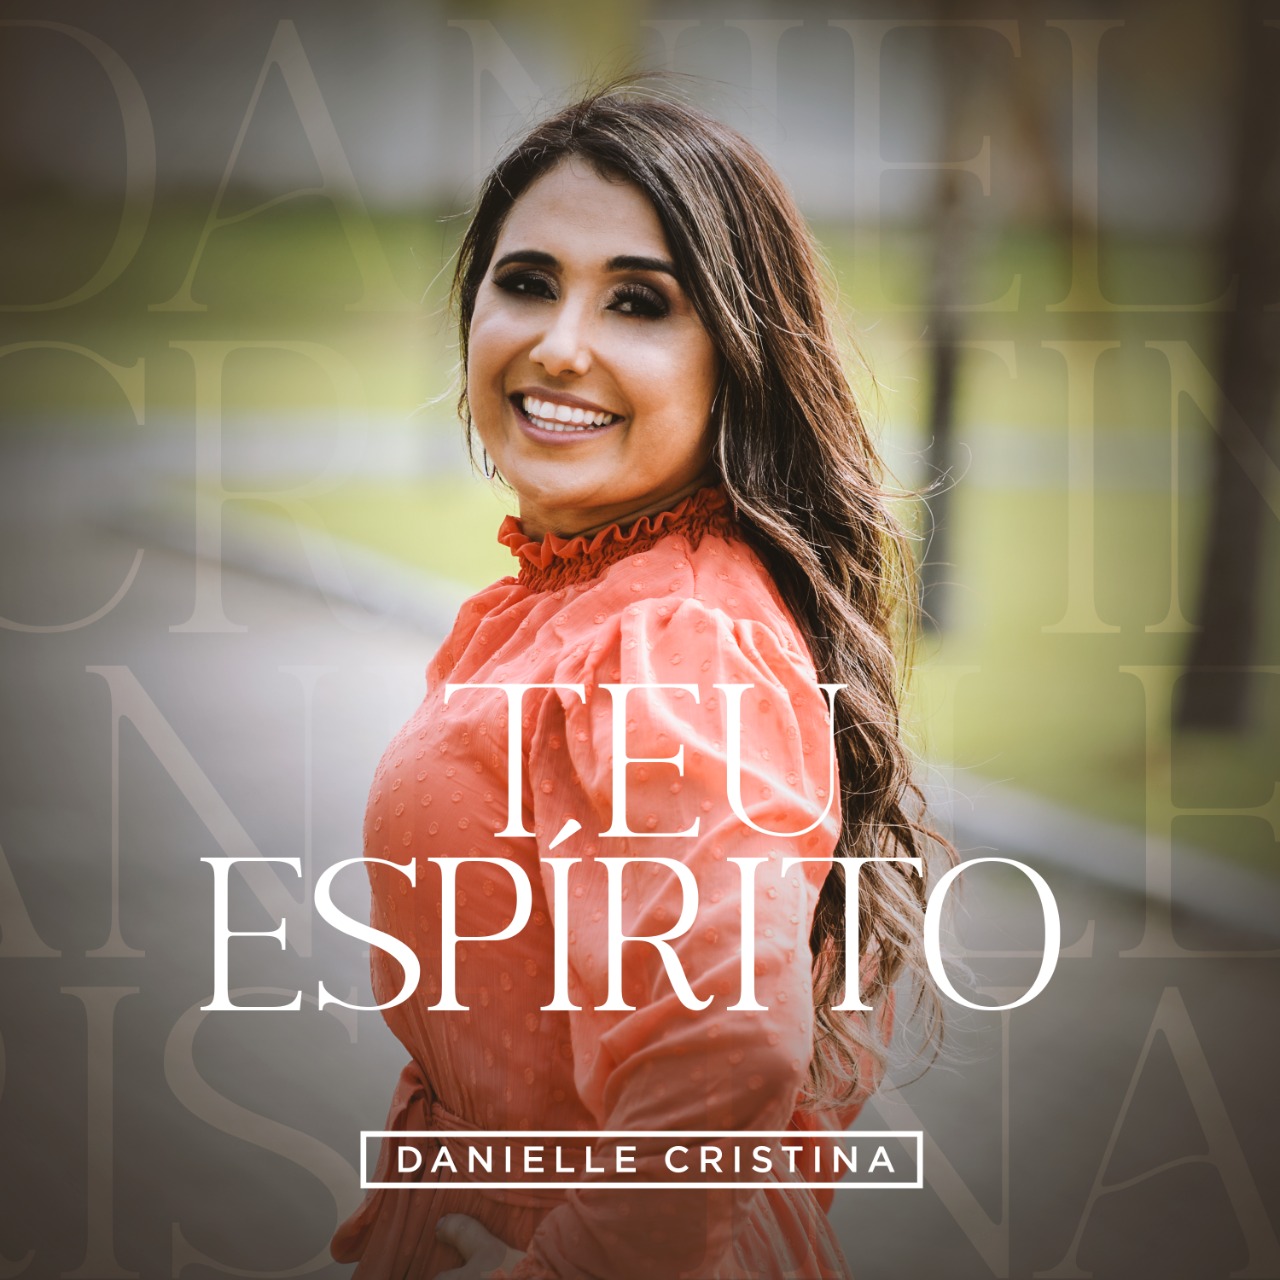 Danielle Cristina lança “Teu Espírito”, versão de Tasha Cobbs Leonard, pela Central Gospel Music